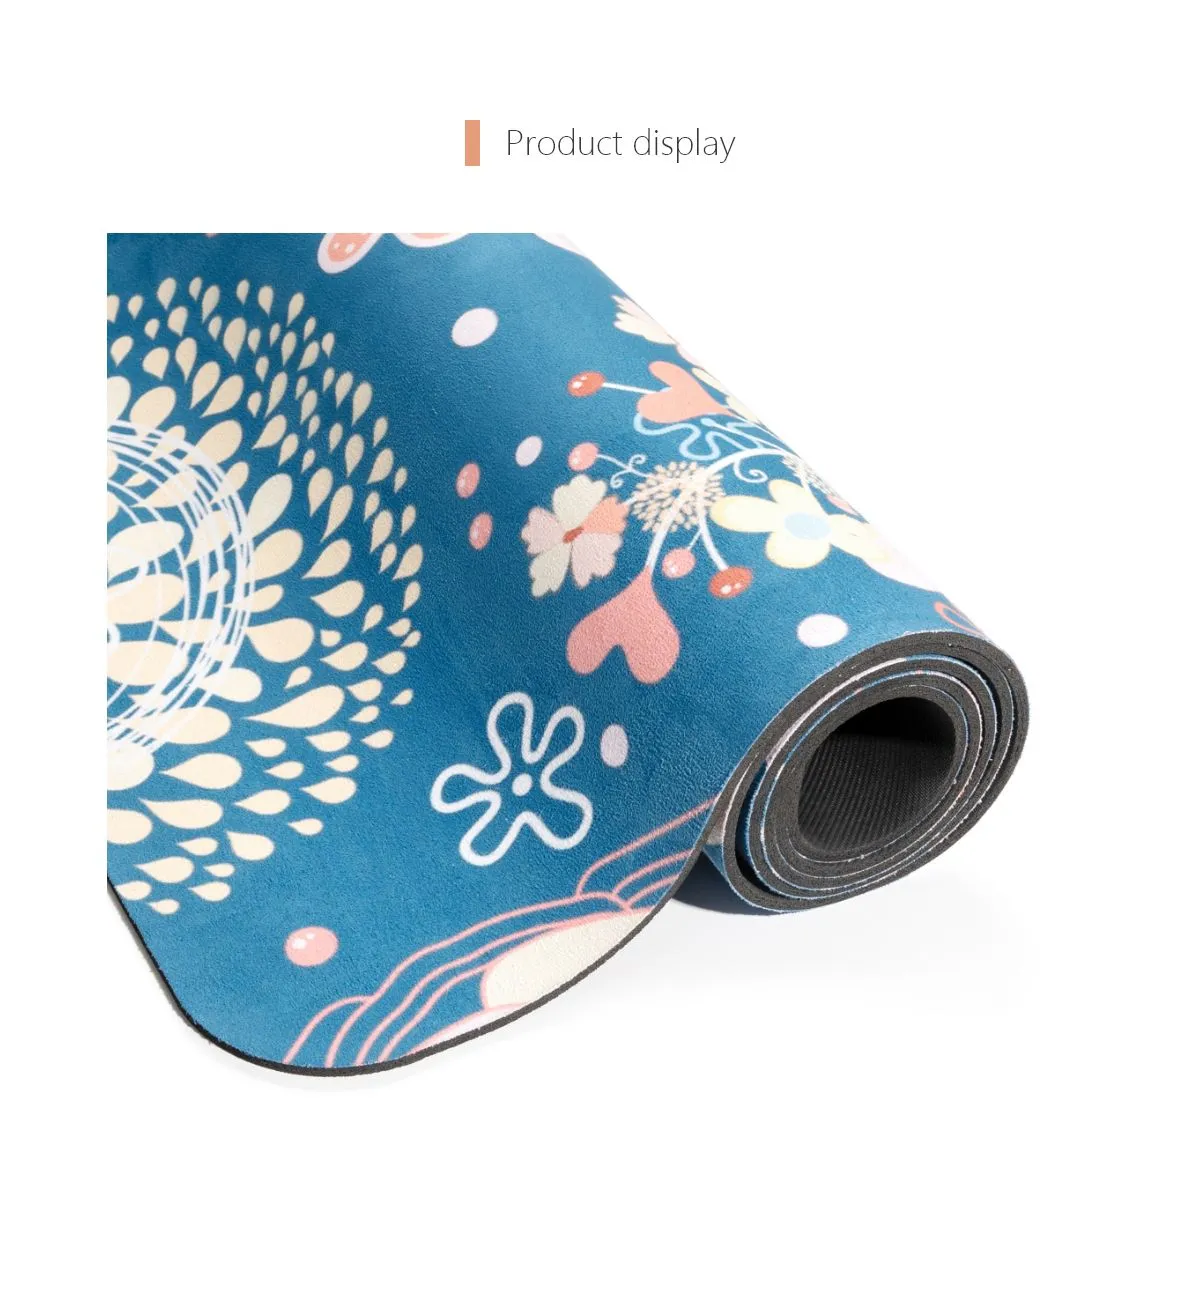 OEM Digital Printed Suede Rubber Yoga Mat